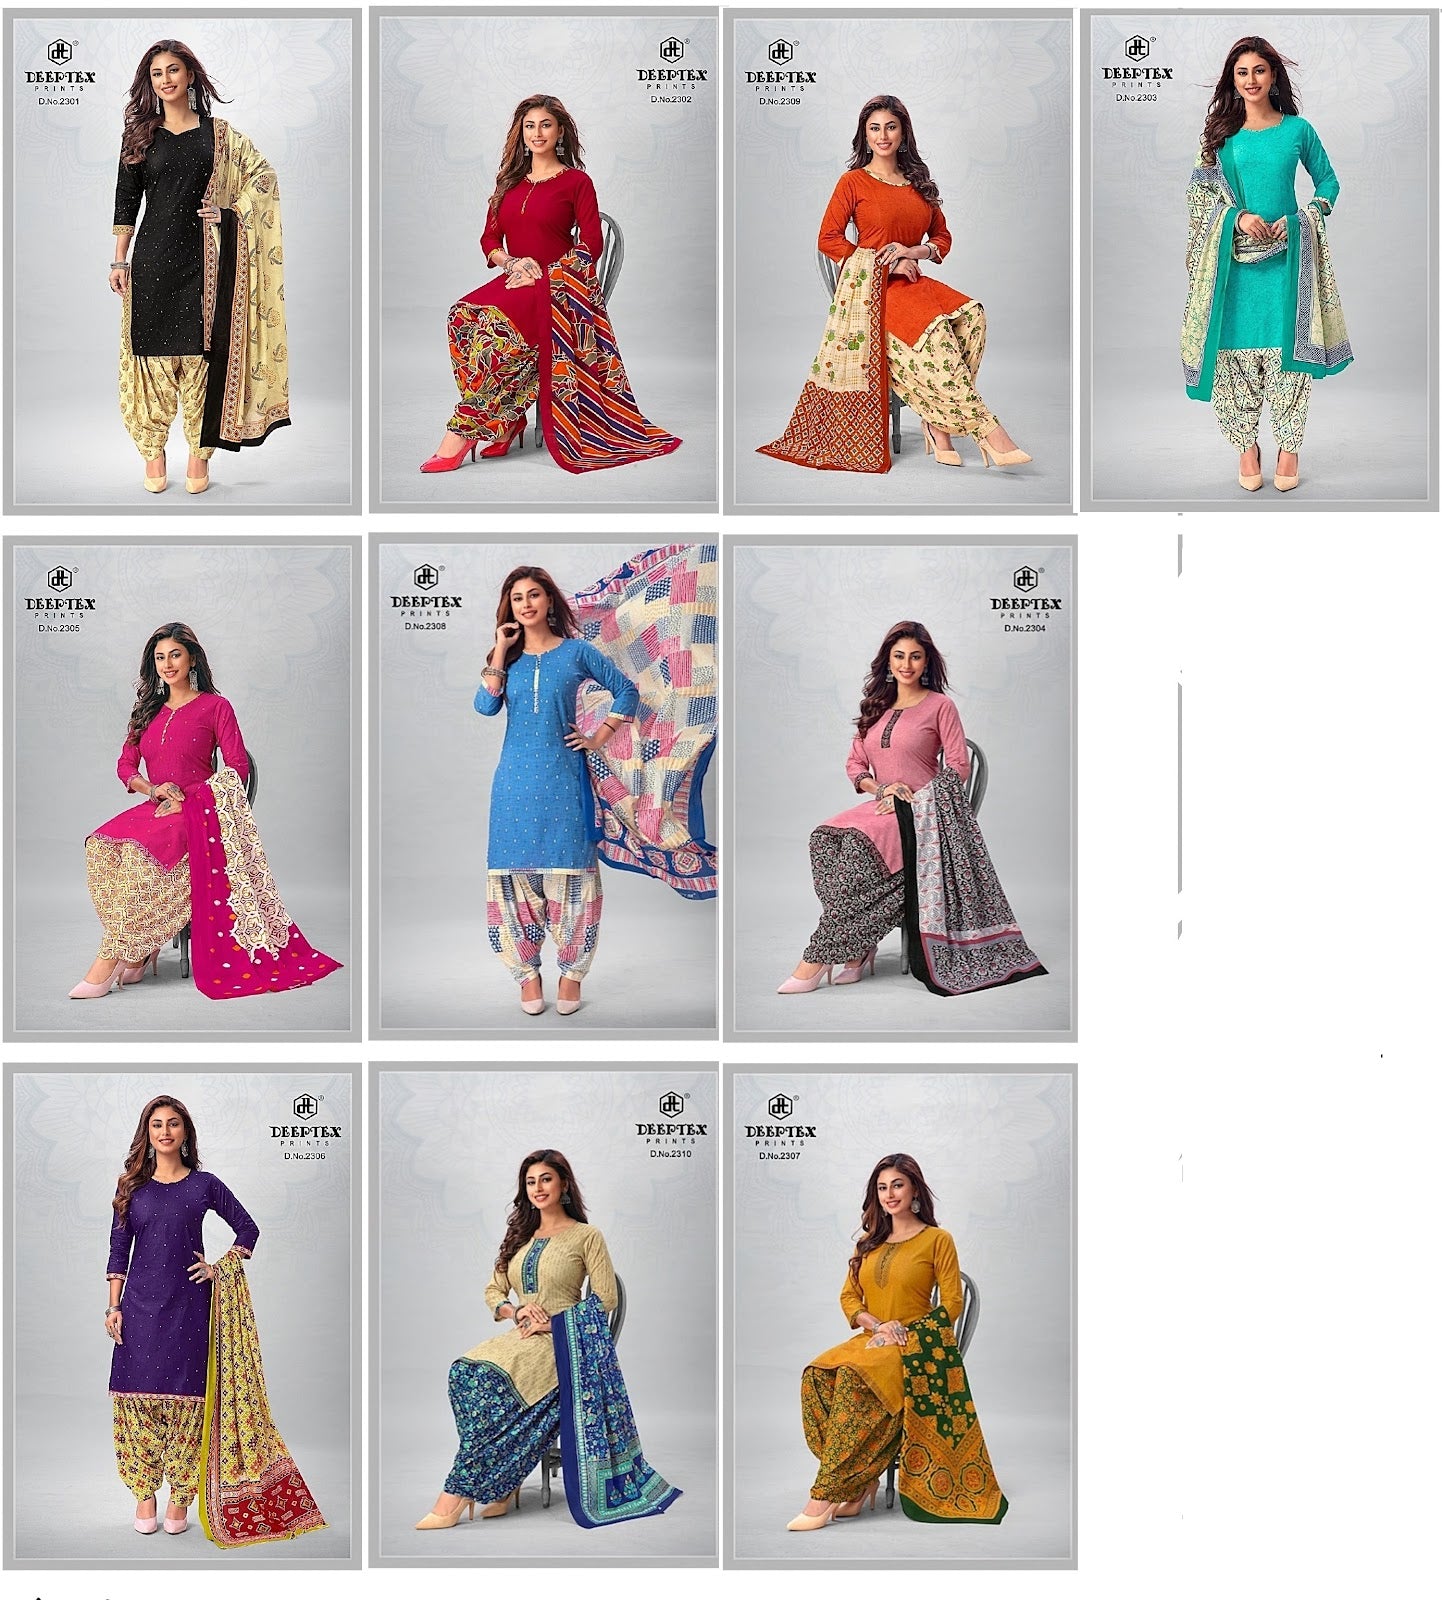 Pichkari Vol 23 Deeptex Prints Cotton Dress Material